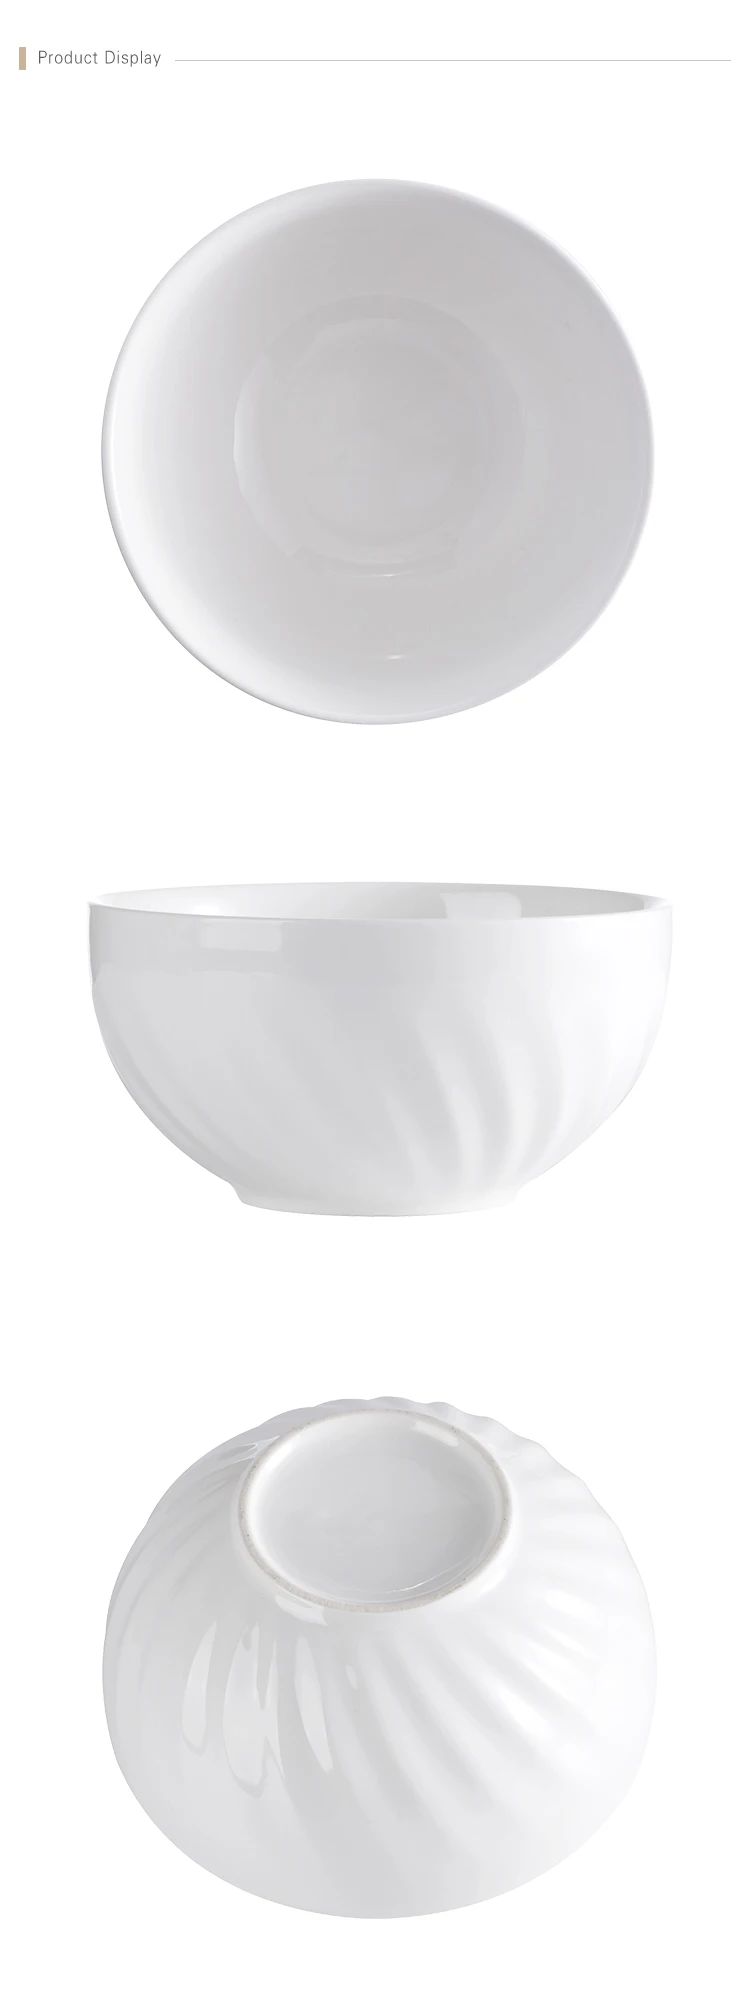 Korean Ceramic Bowl 5/6.25/8.25 Inch Custom Printed Ceramic Bowl